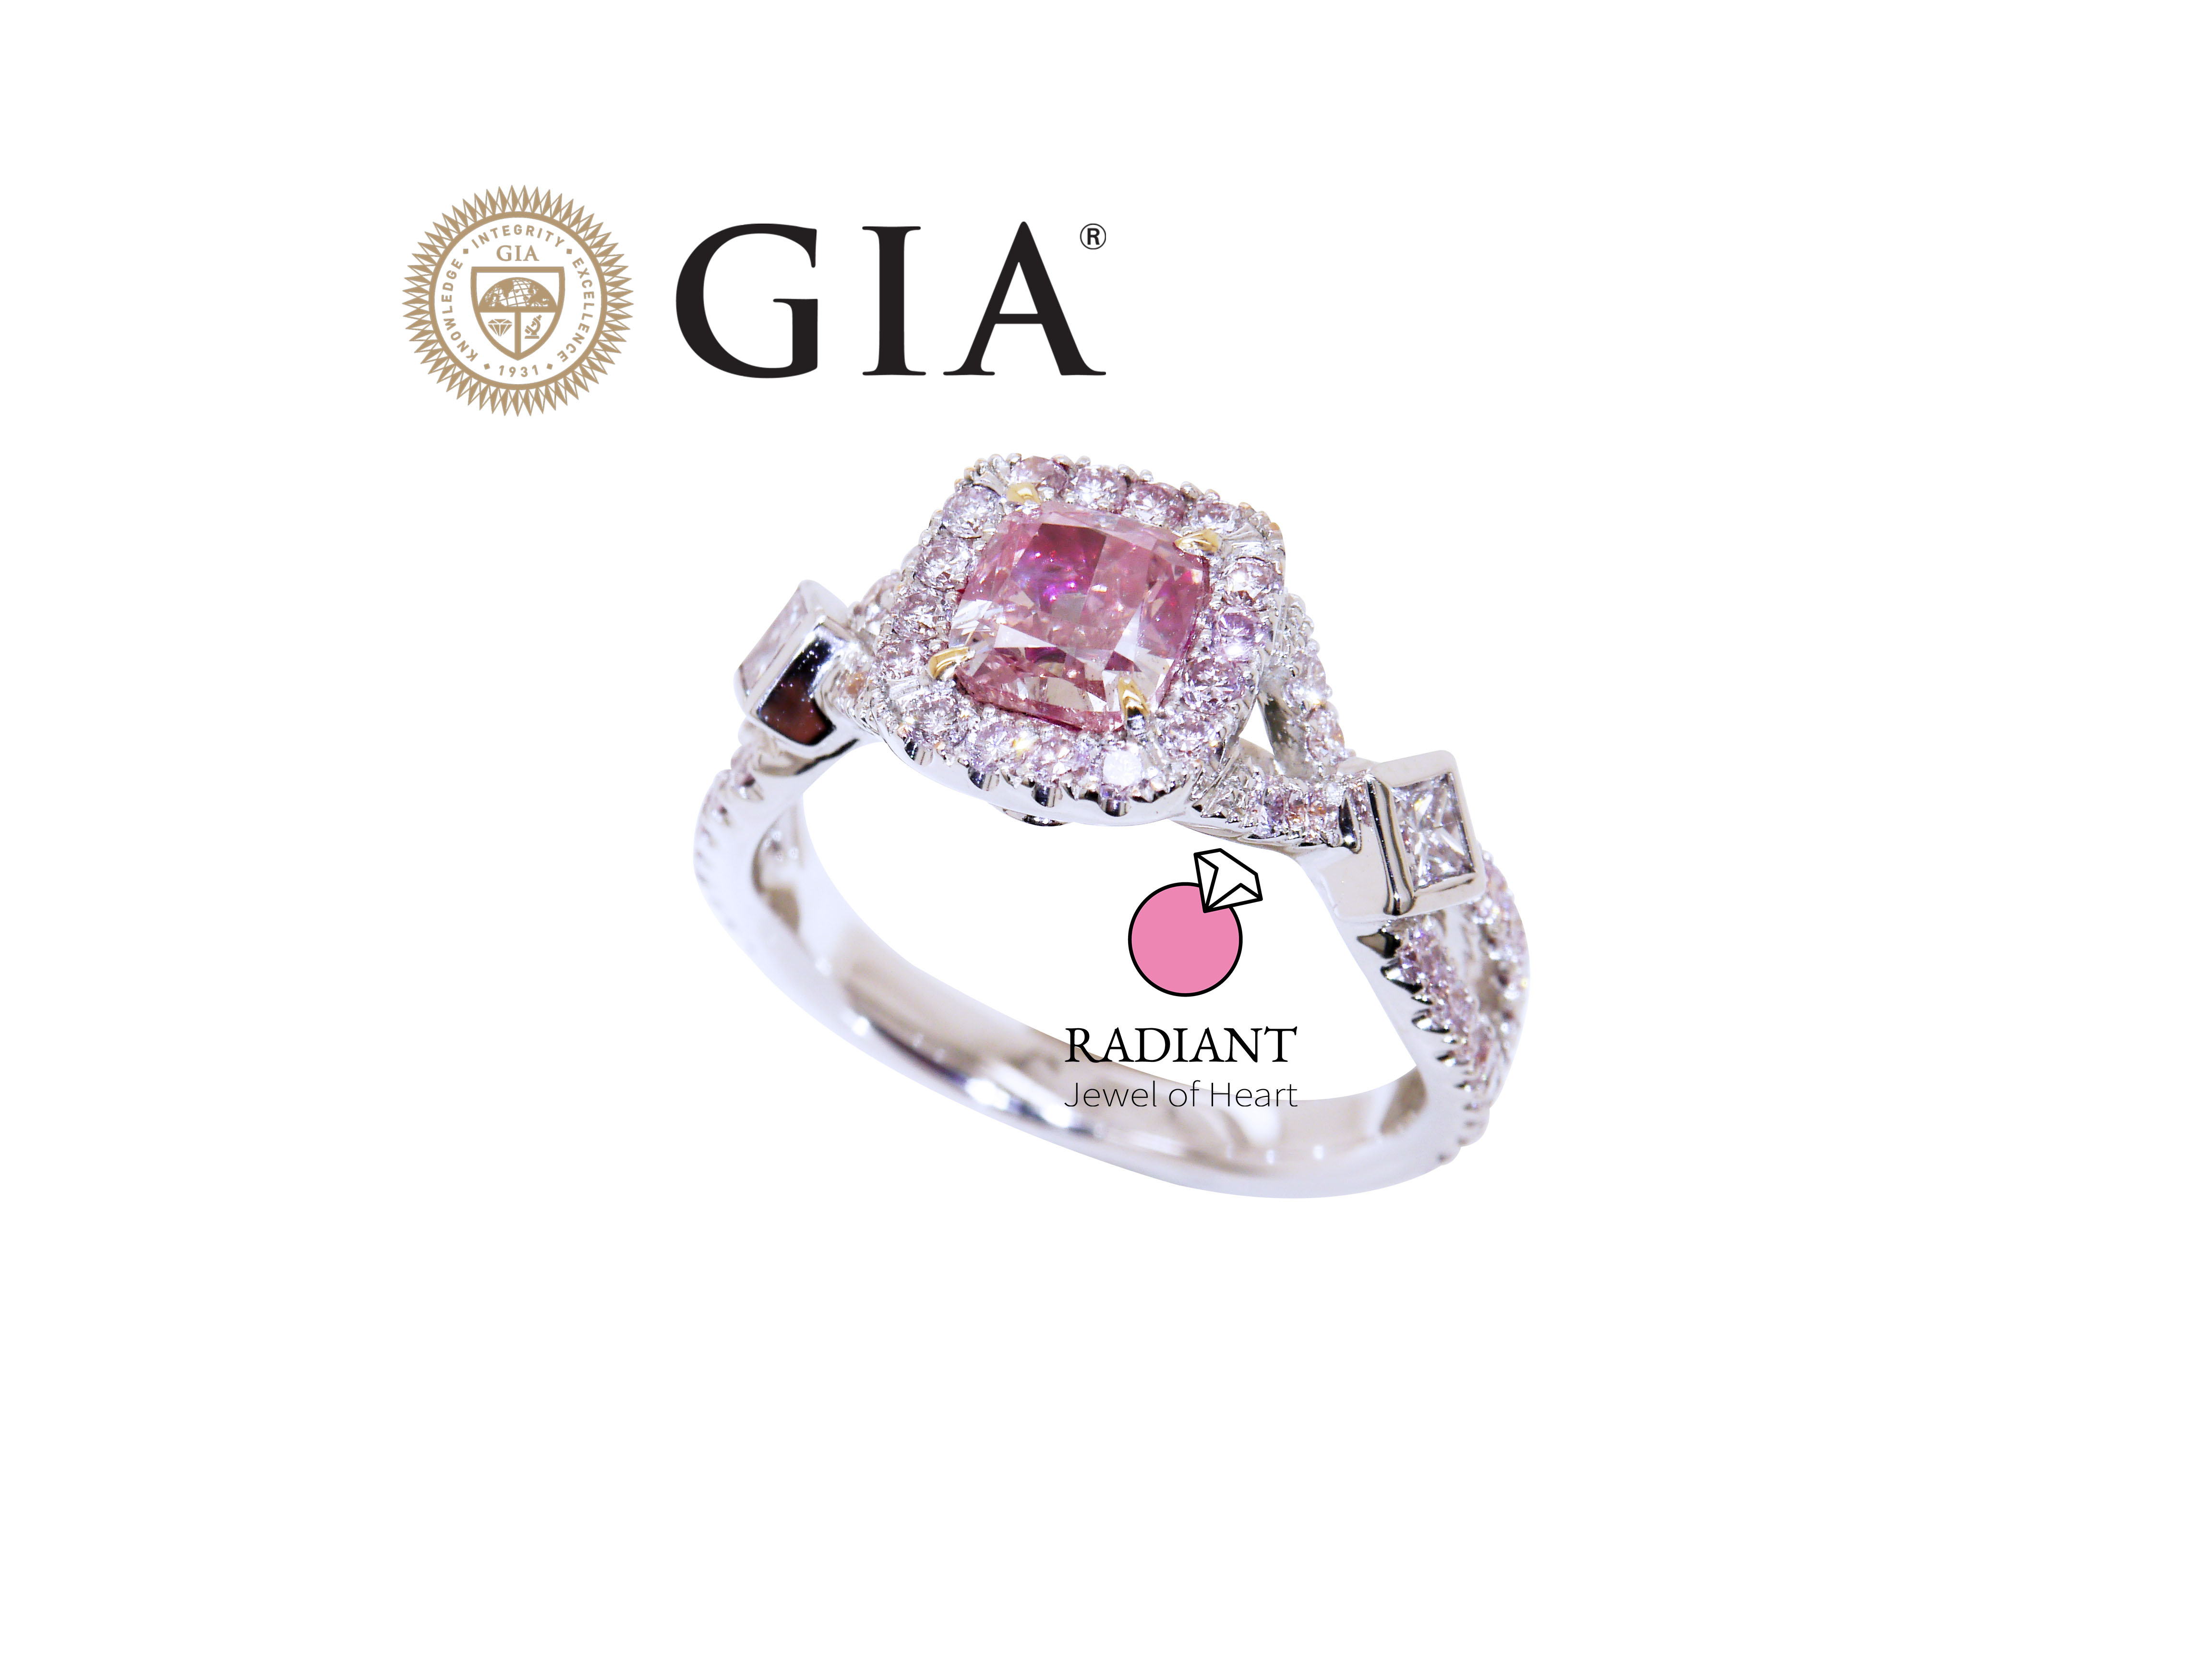 天然鑽石 GIA認證 浪漫永恆粉鑽戒 0.83克拉 粉鑽 18K金鑽戒 附GIA證書 閃亮珠寶